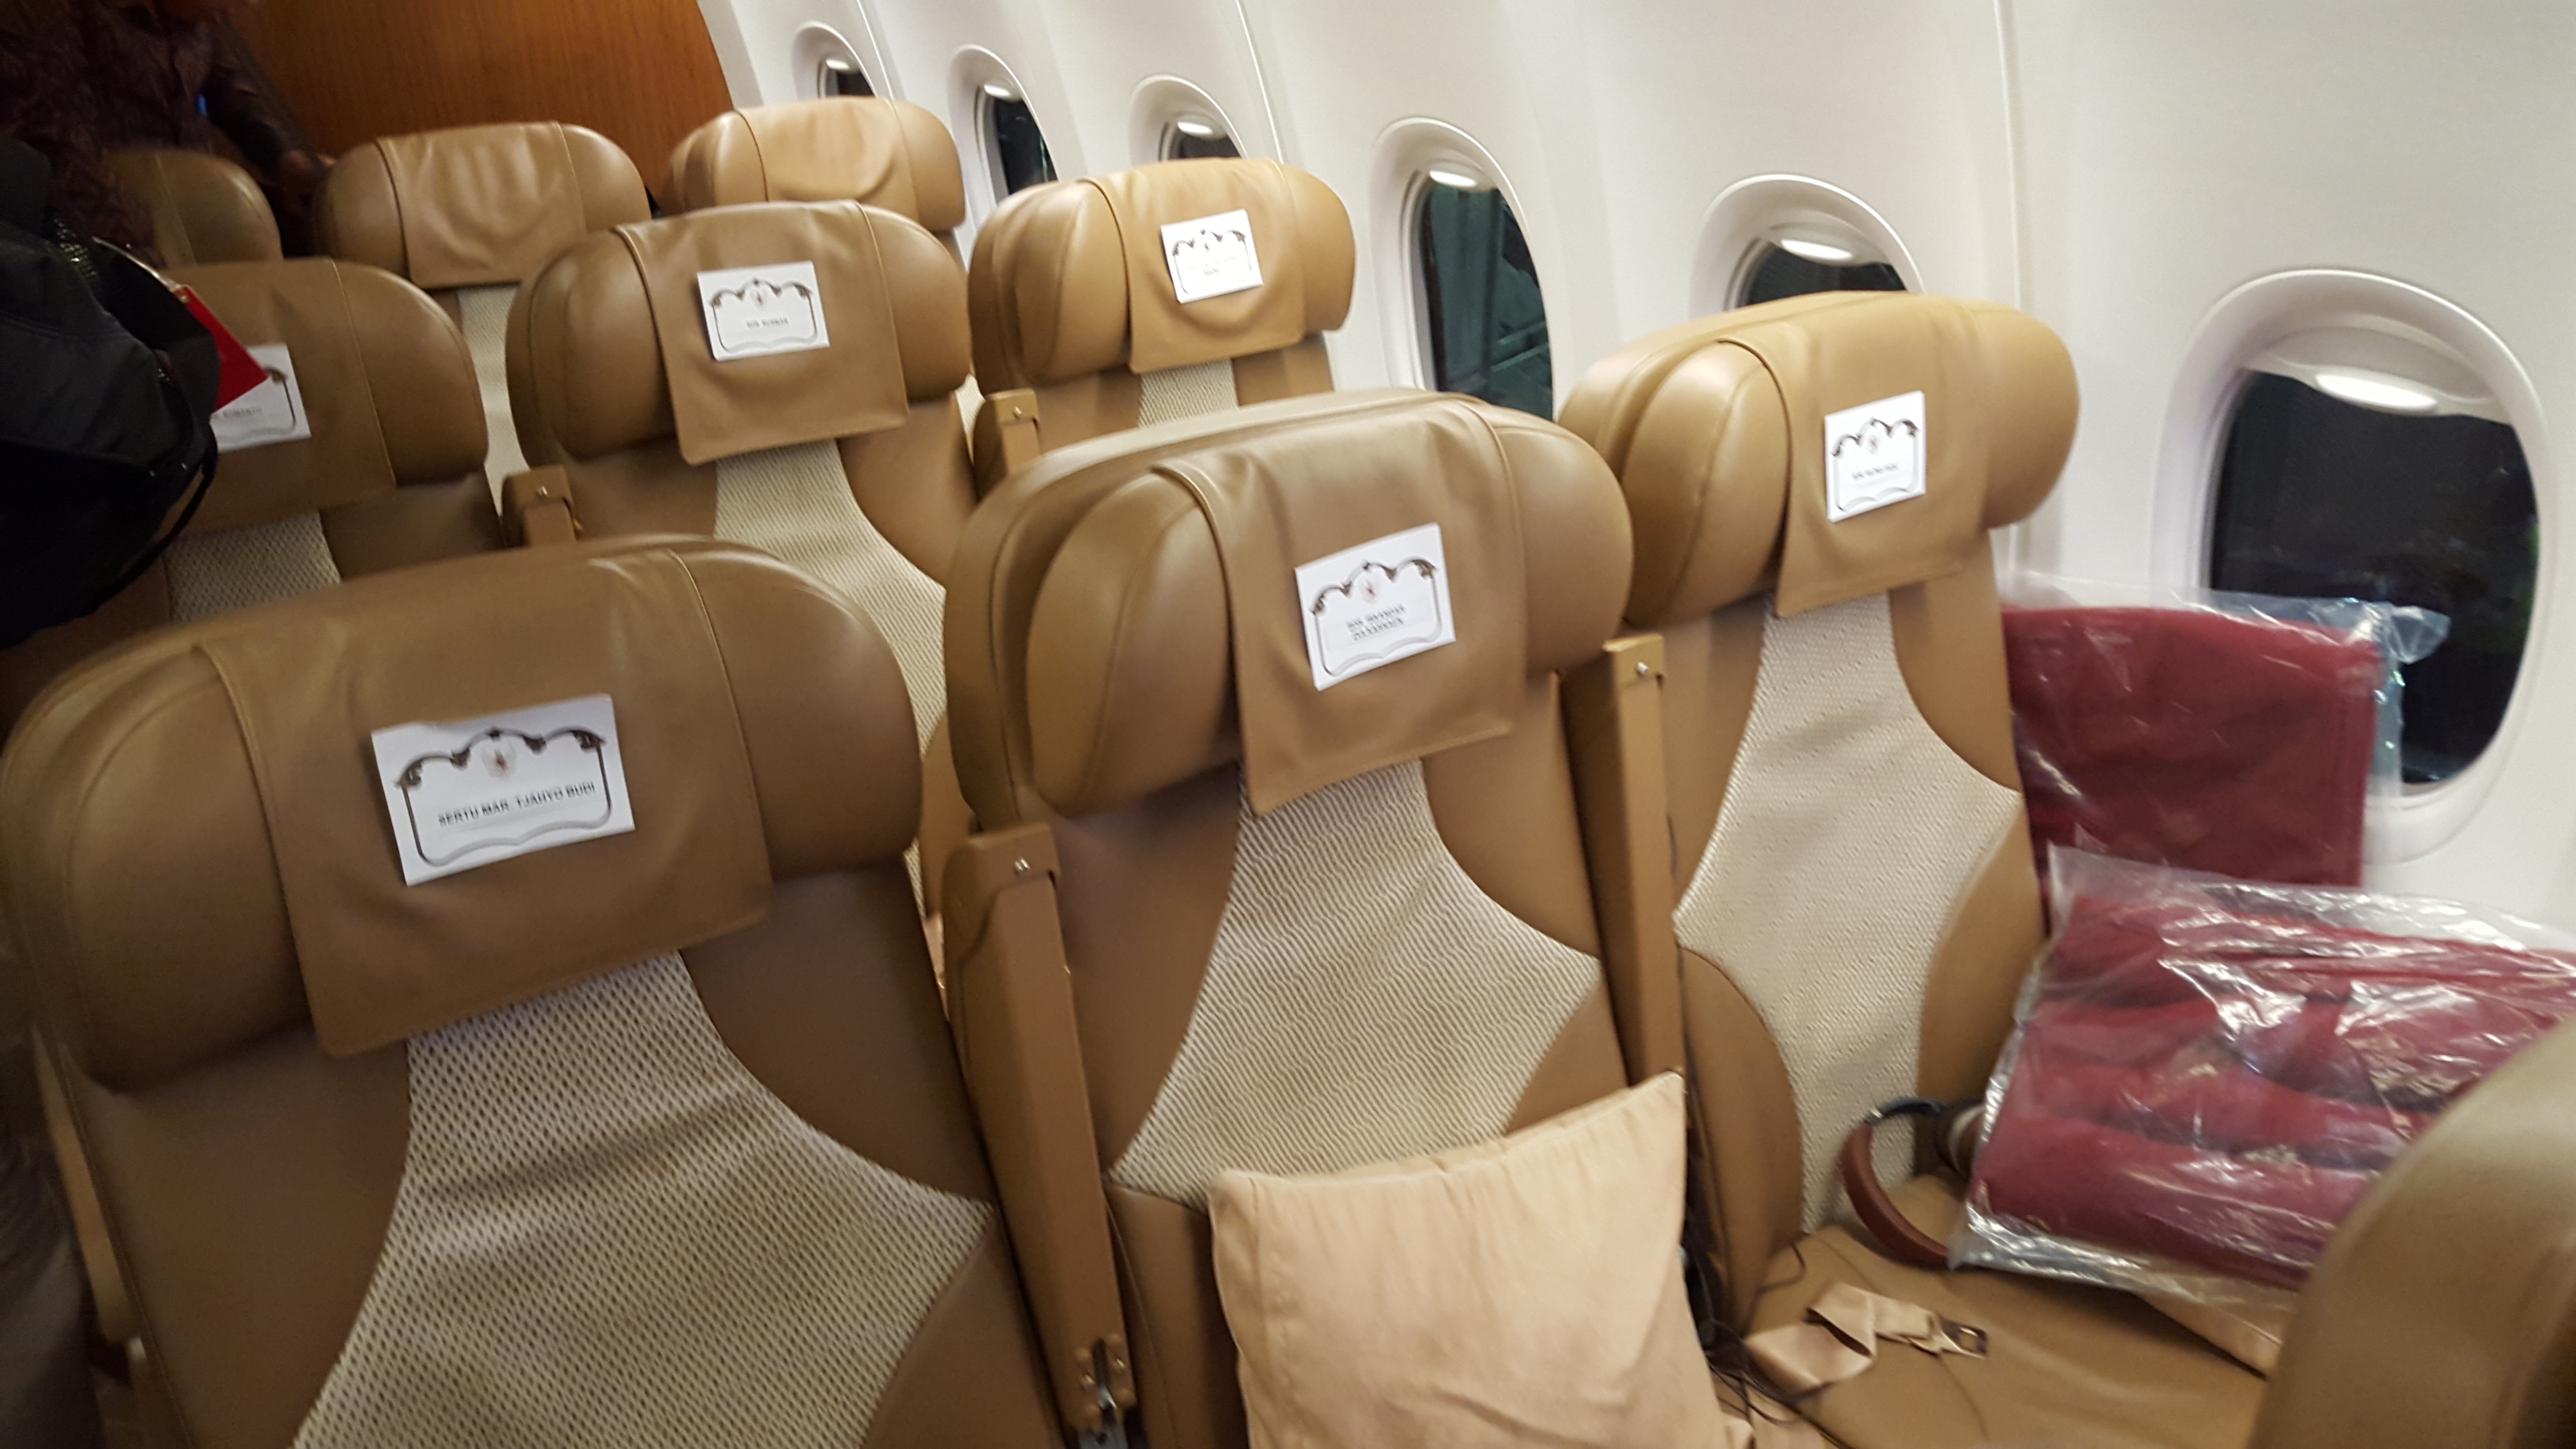 Semua tempat duduk dibalut kulit warna coklat. Kualitasnya satu tingkat dibanding pesawat komersil jarak jauh yang pernah saya naiki. (@iskandarjet)